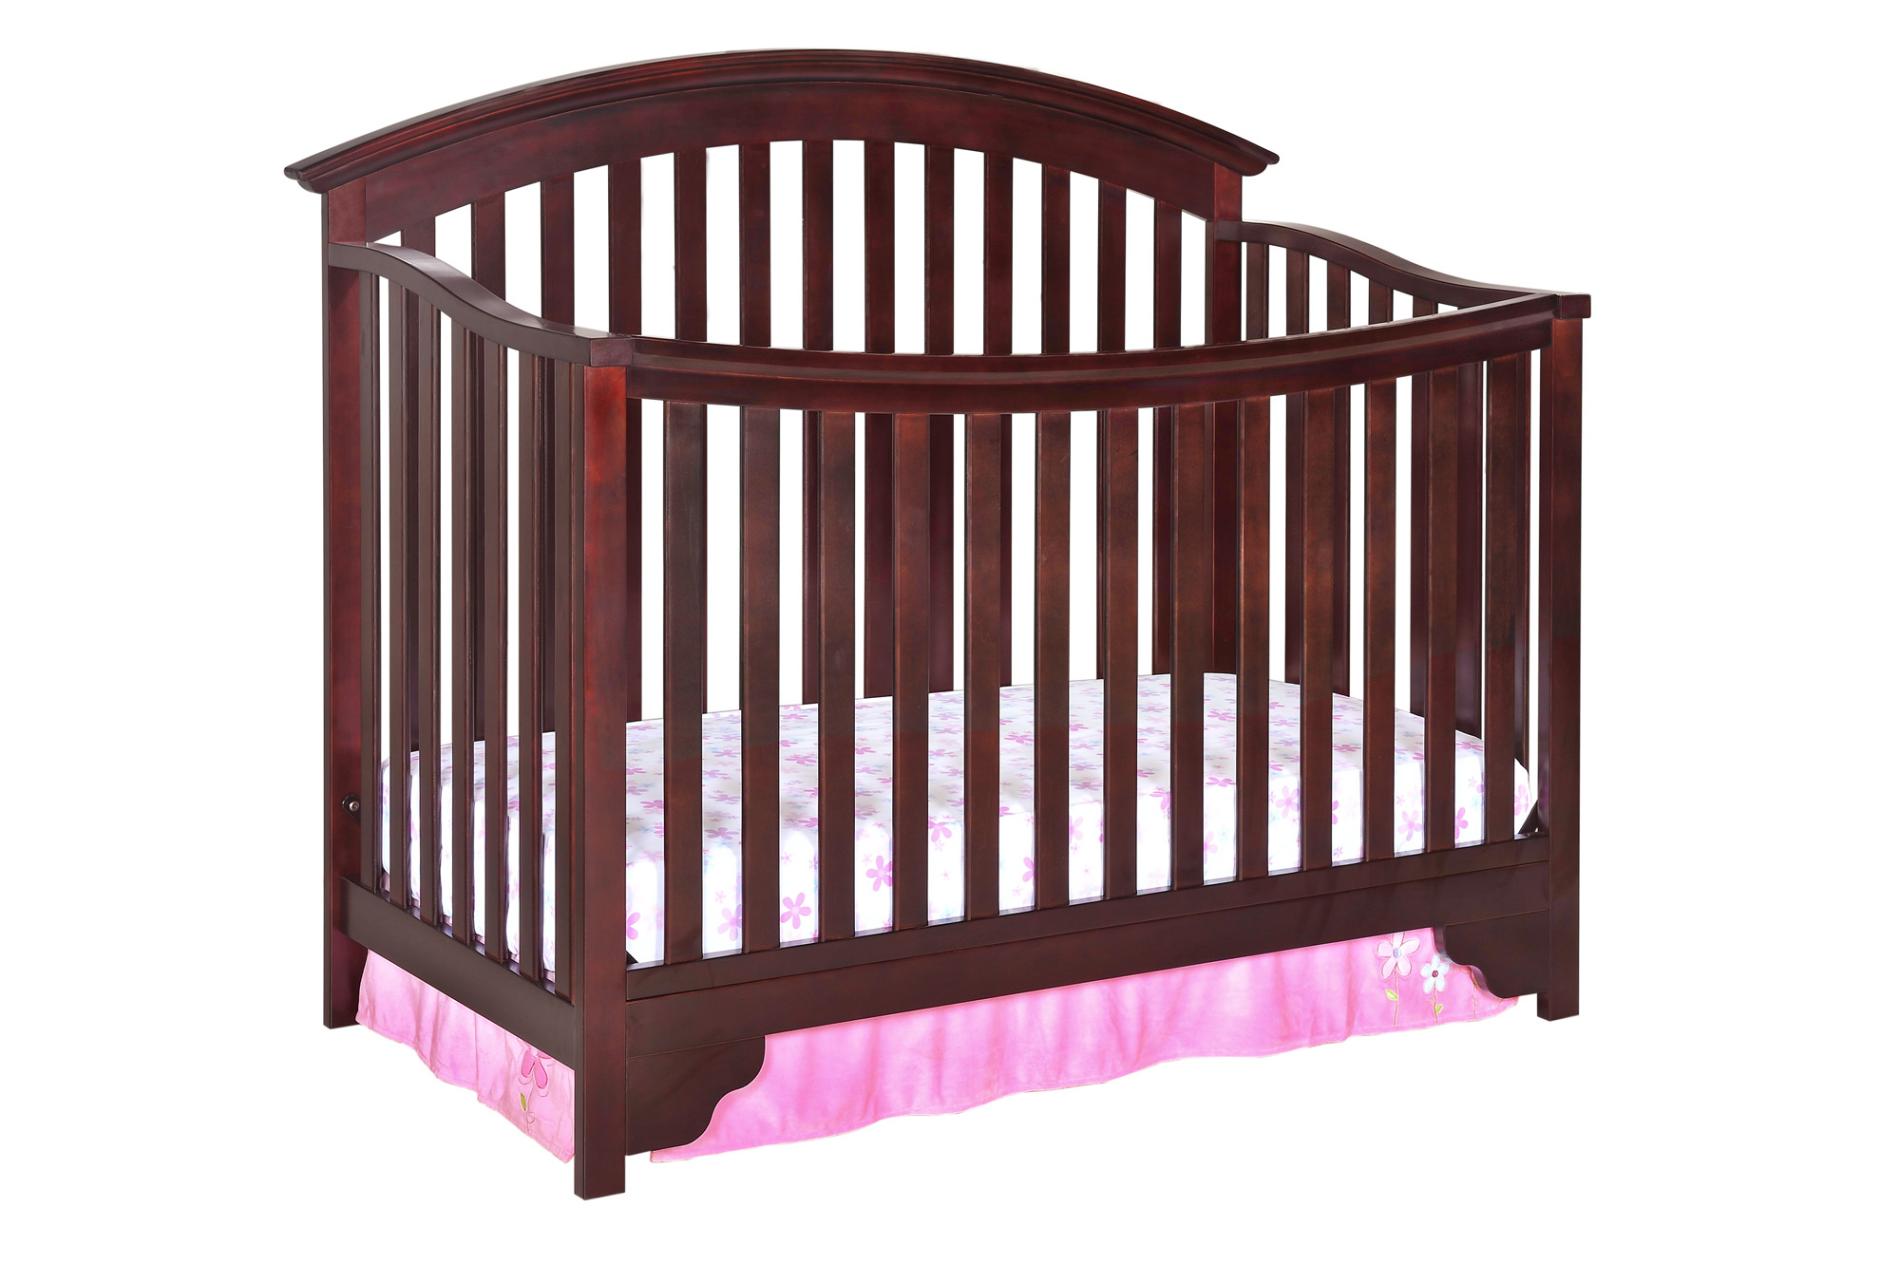 sears delta crib